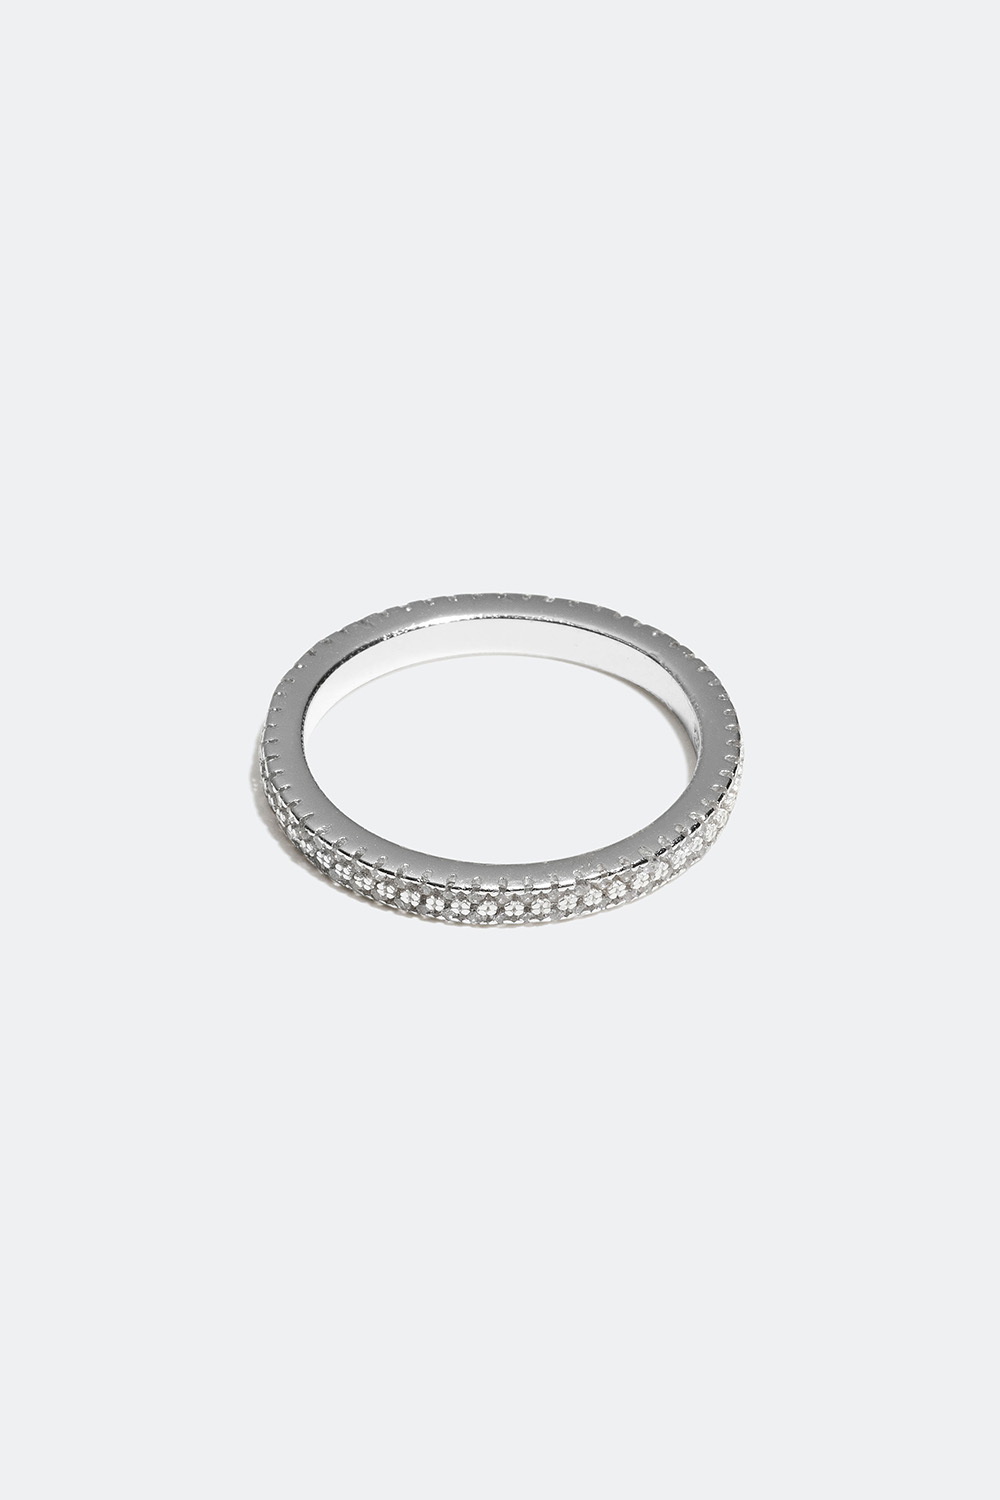 Ring i ekte sølv med små zirkonia-stener i gruppen Ekte sølv / Sølvringer / Sølv hos Glitter (55600055)